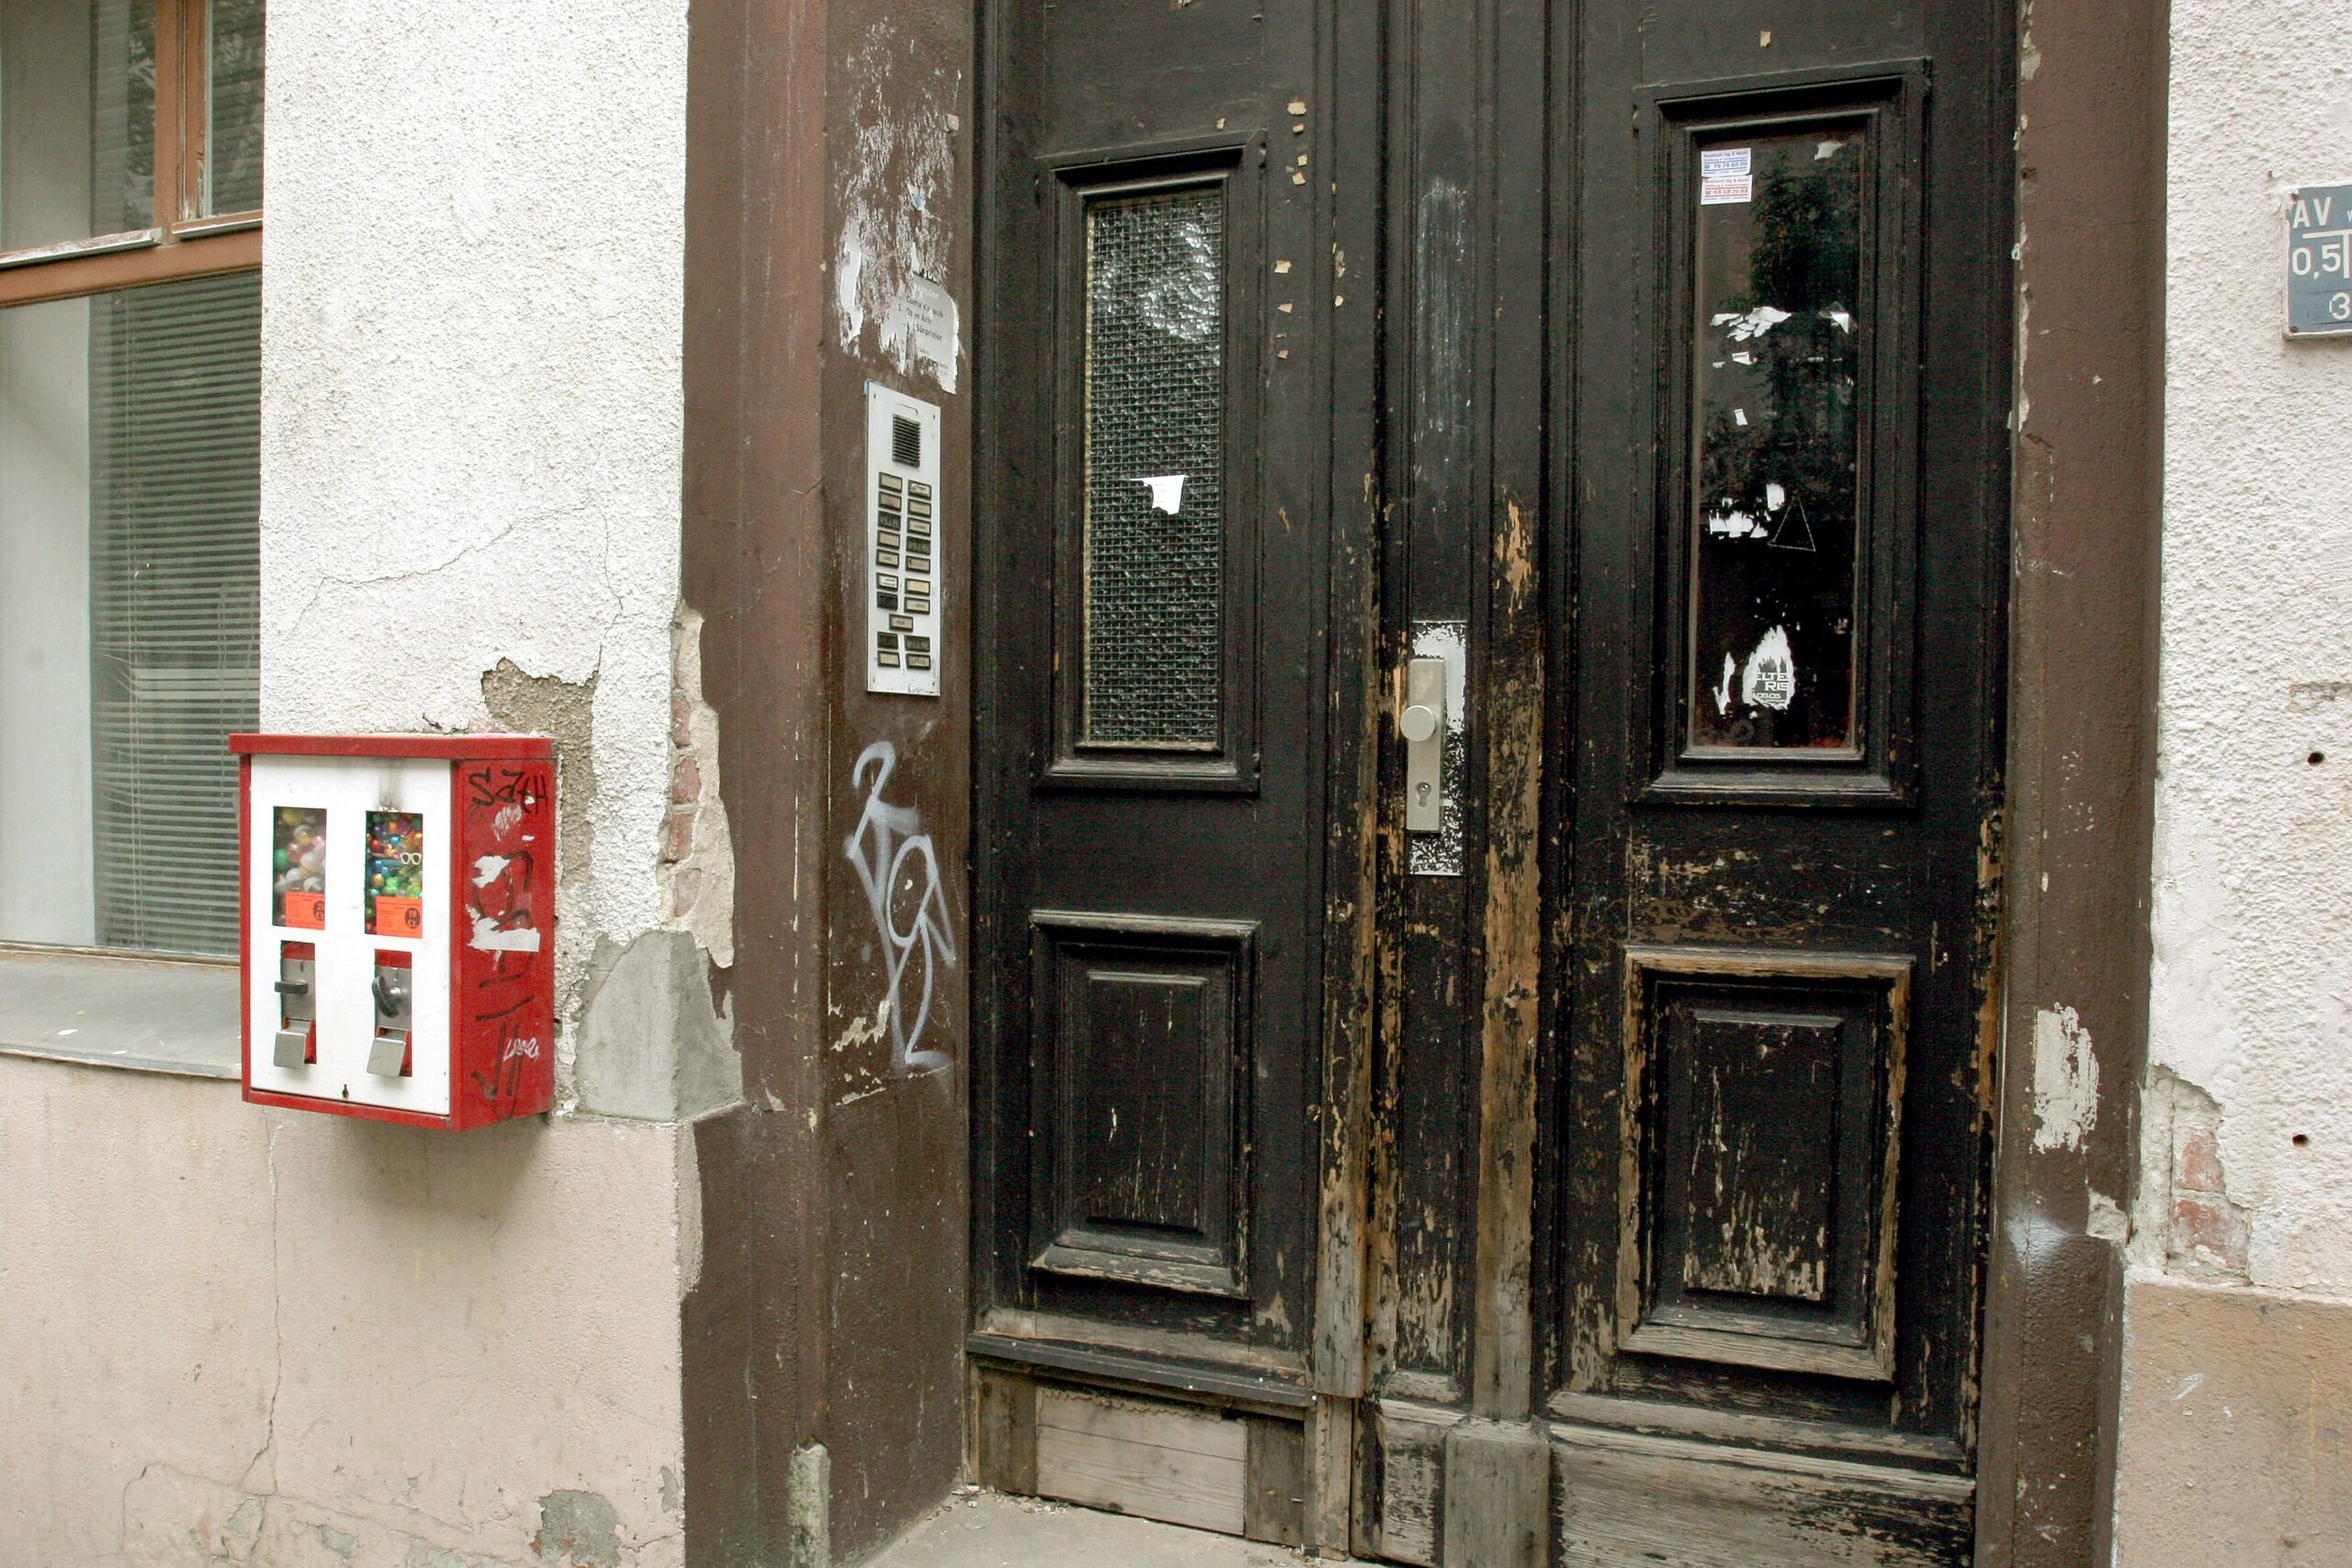 Kaugummiautomat neben verwahrloster Eingangstür. Foto: imago/Ina Peek